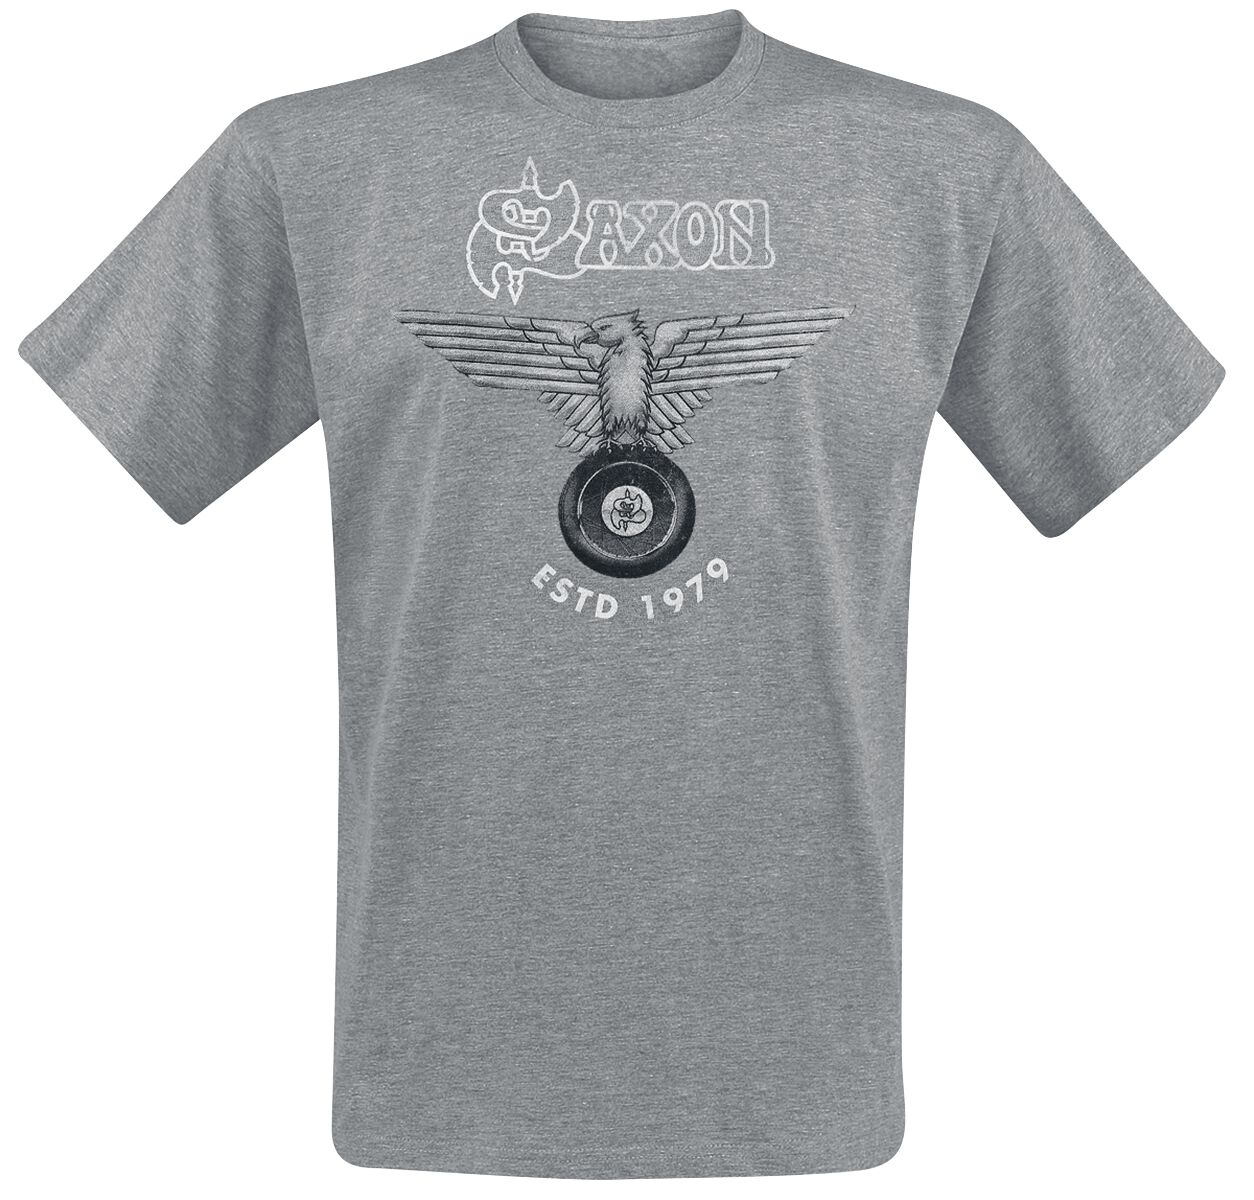 Saxon Est. 1979 T-Shirt mottled grey